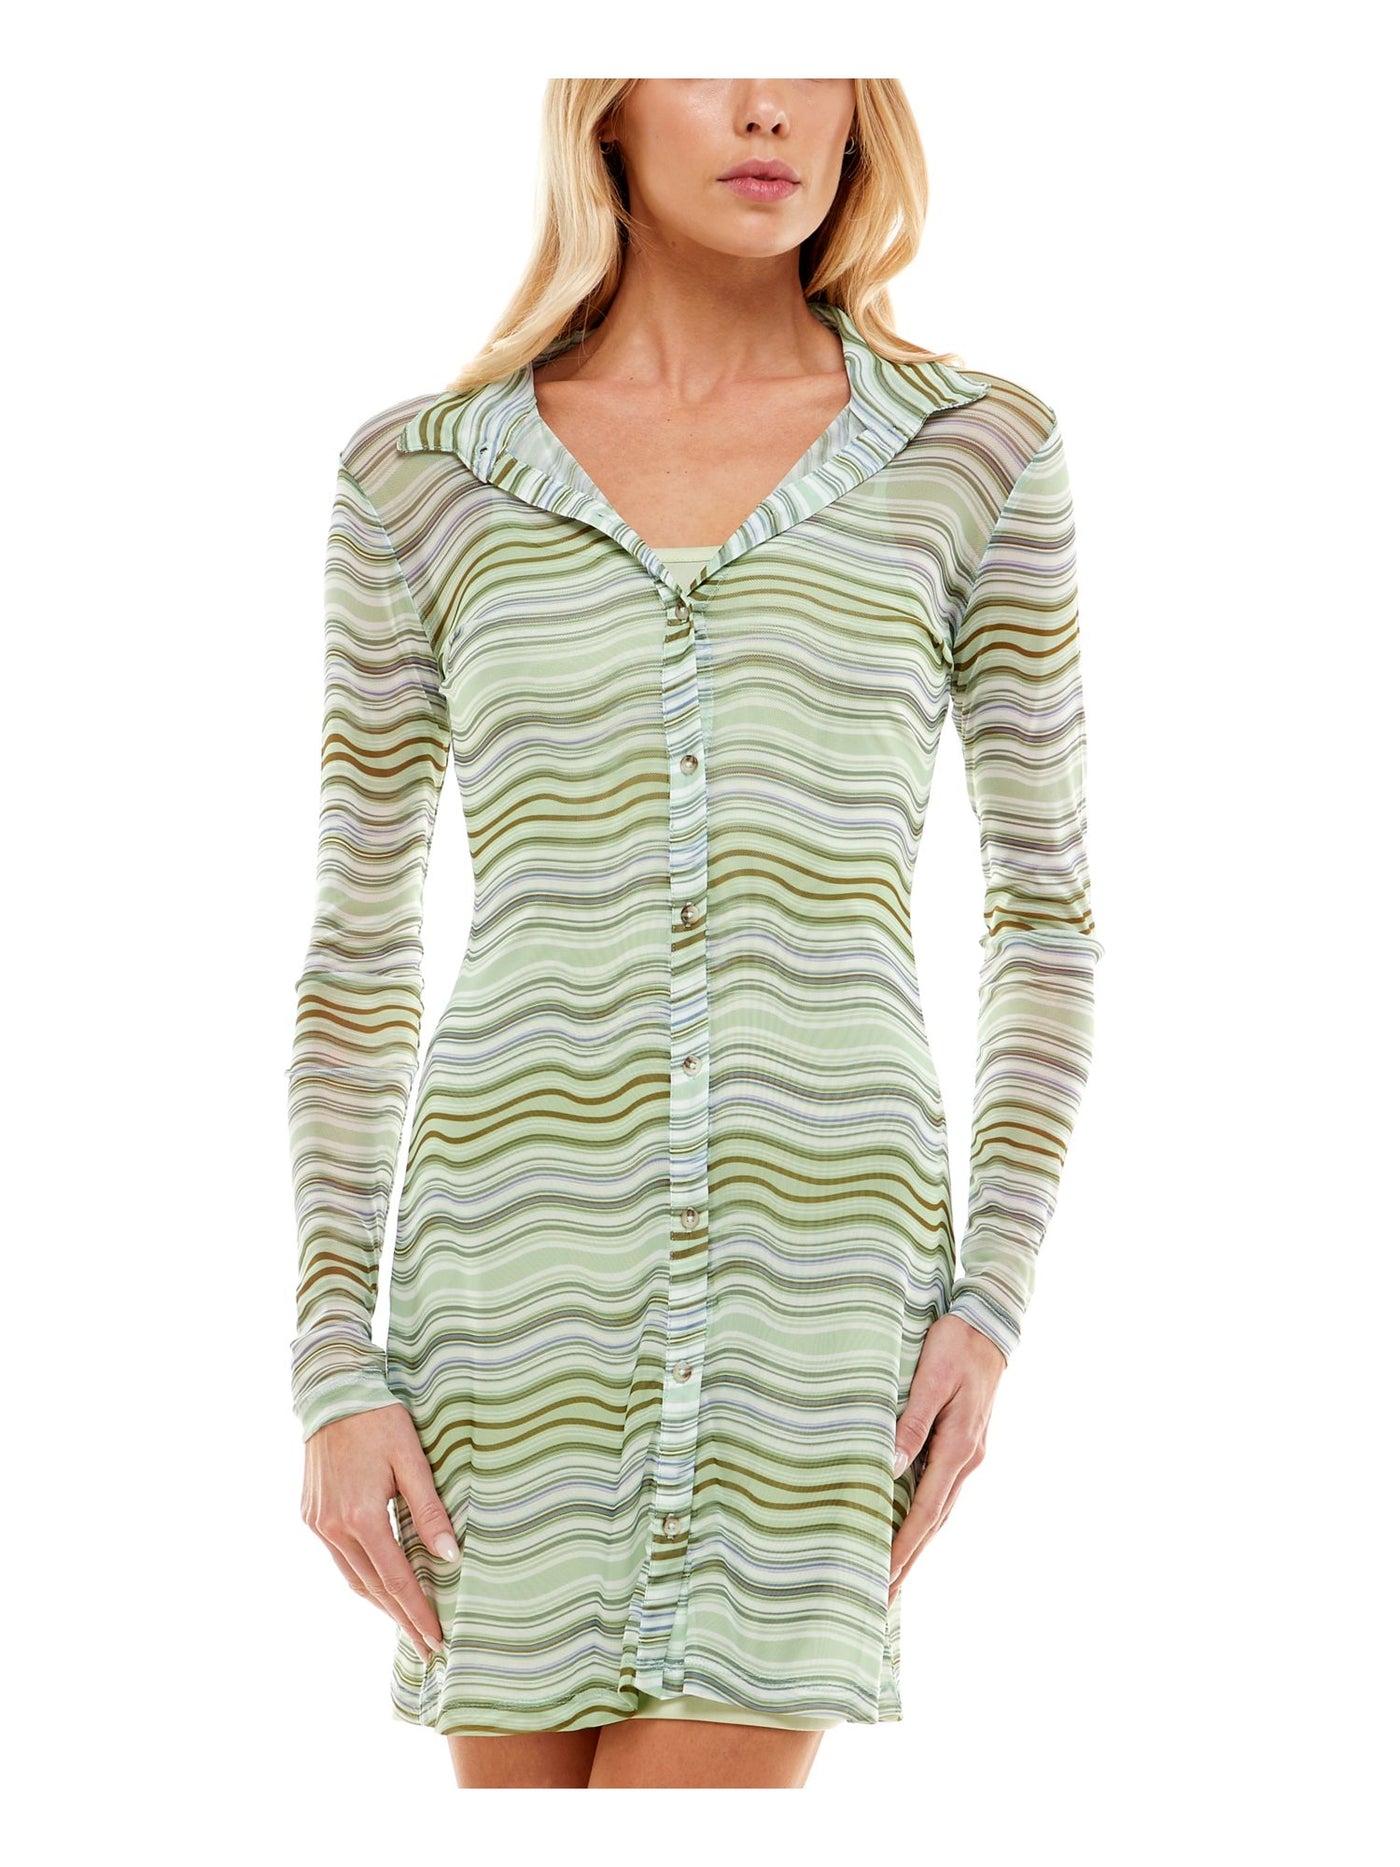 ULTRA FLIRT Womens Green Sheer Lined Overlay Striped Long Sleeve Collared Short Party Shirt Dress Juniors S